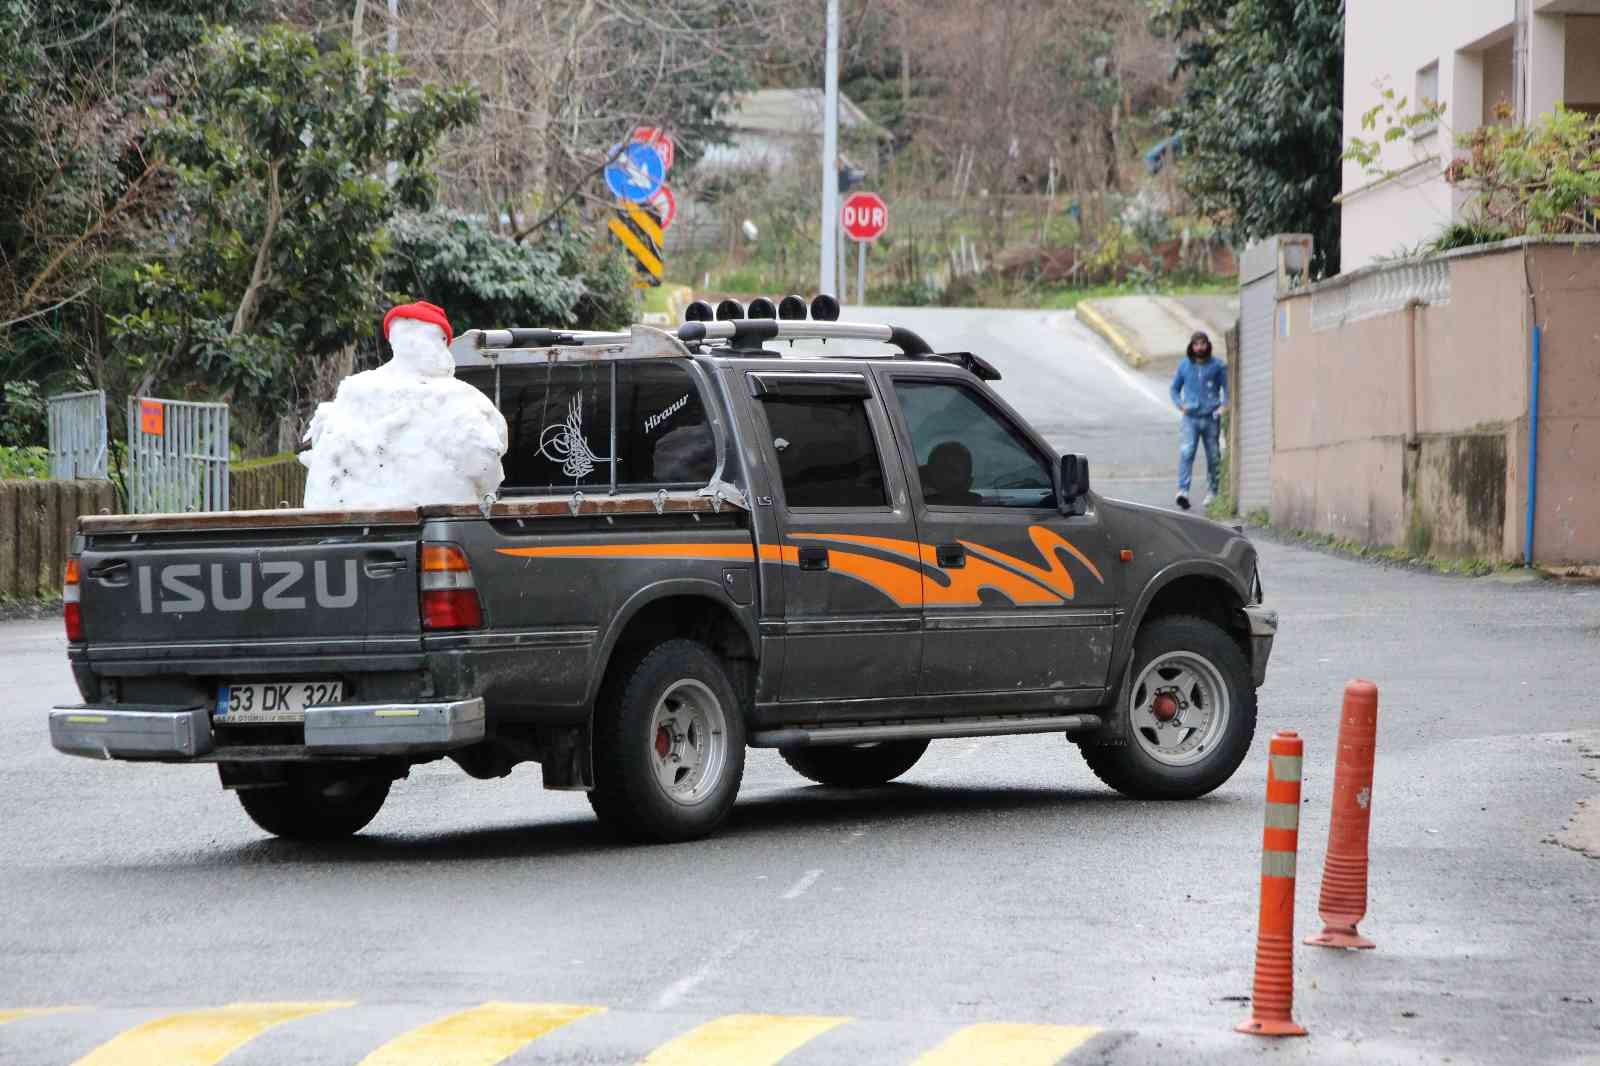 Rize’de kardan adama kamyonetin kasasında şehir turu attırdılar #rize